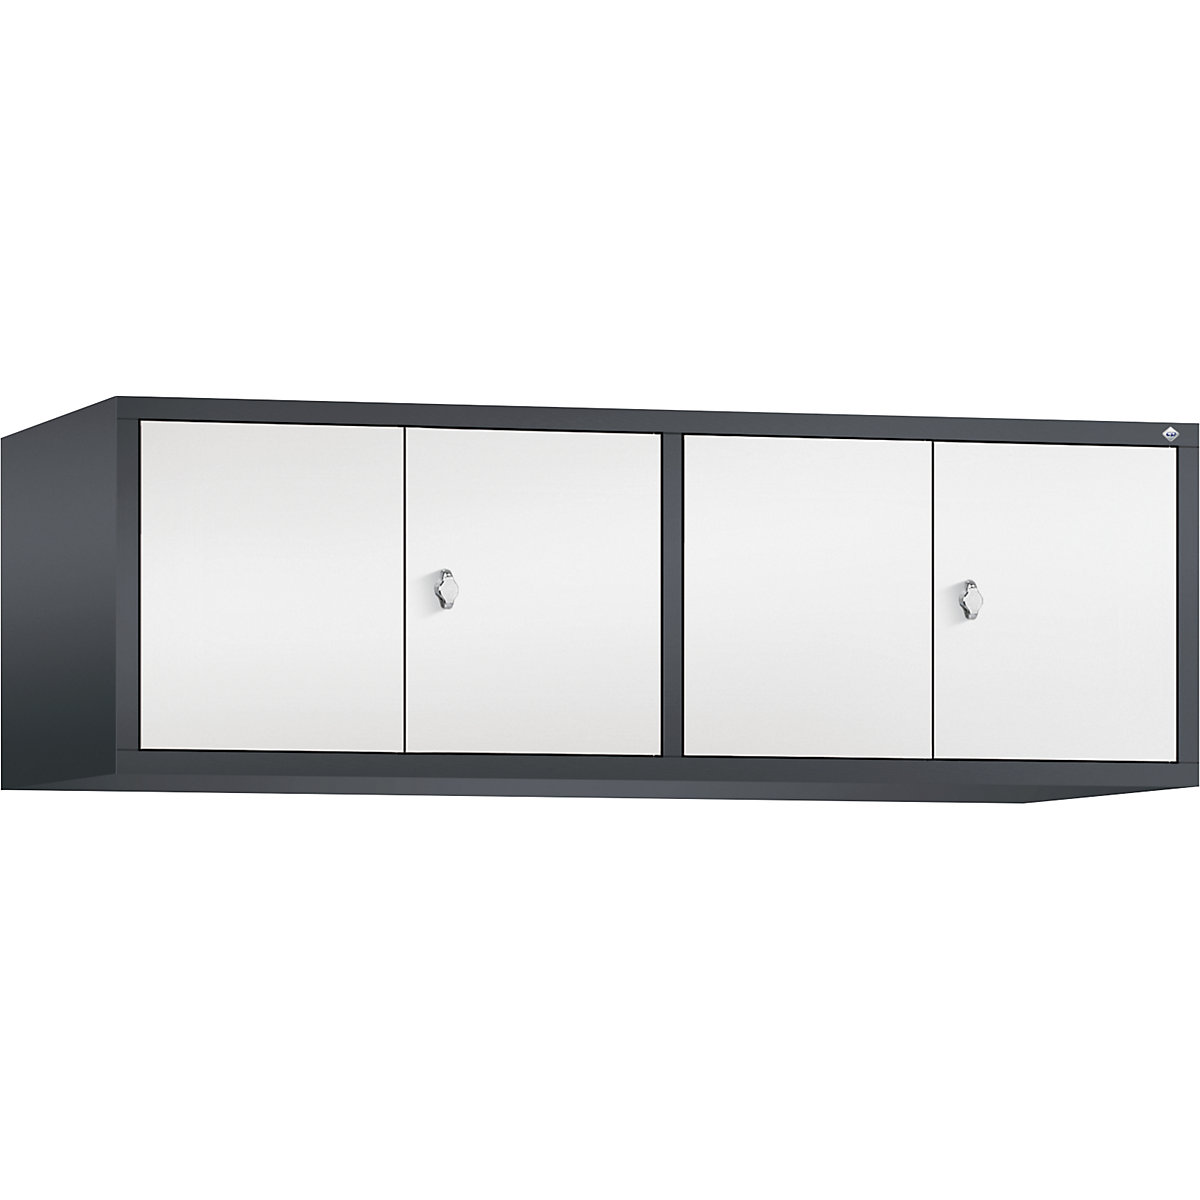 C+P – Altillo CLASSIC, puertas batientes que cierran al ras entre sí, 4 compartimentos, anchura de compartimento 400 mm, gris negruzco / blanco tráfico